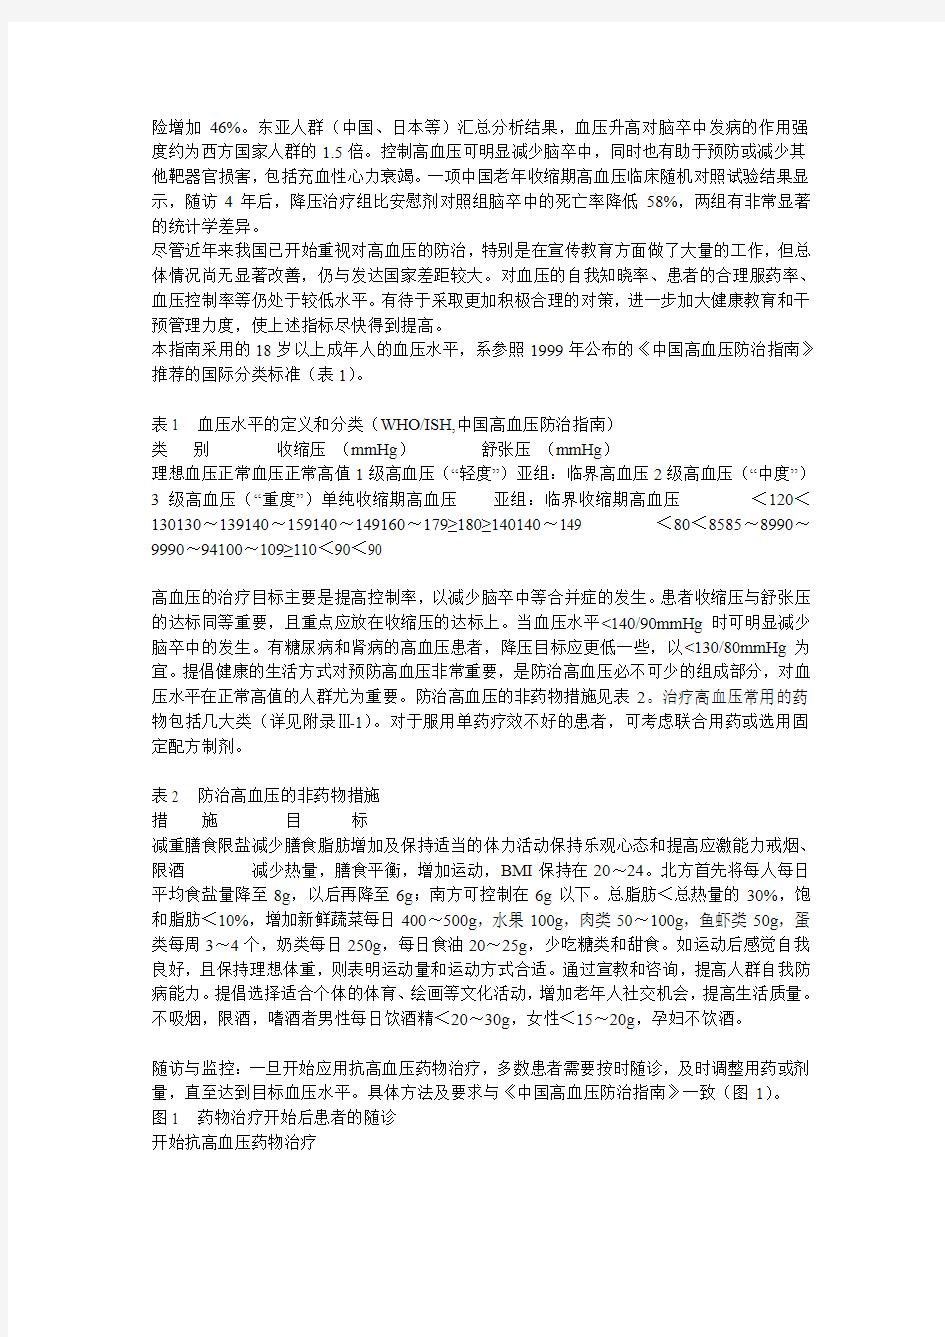 中国脑血管病防治指南—2005